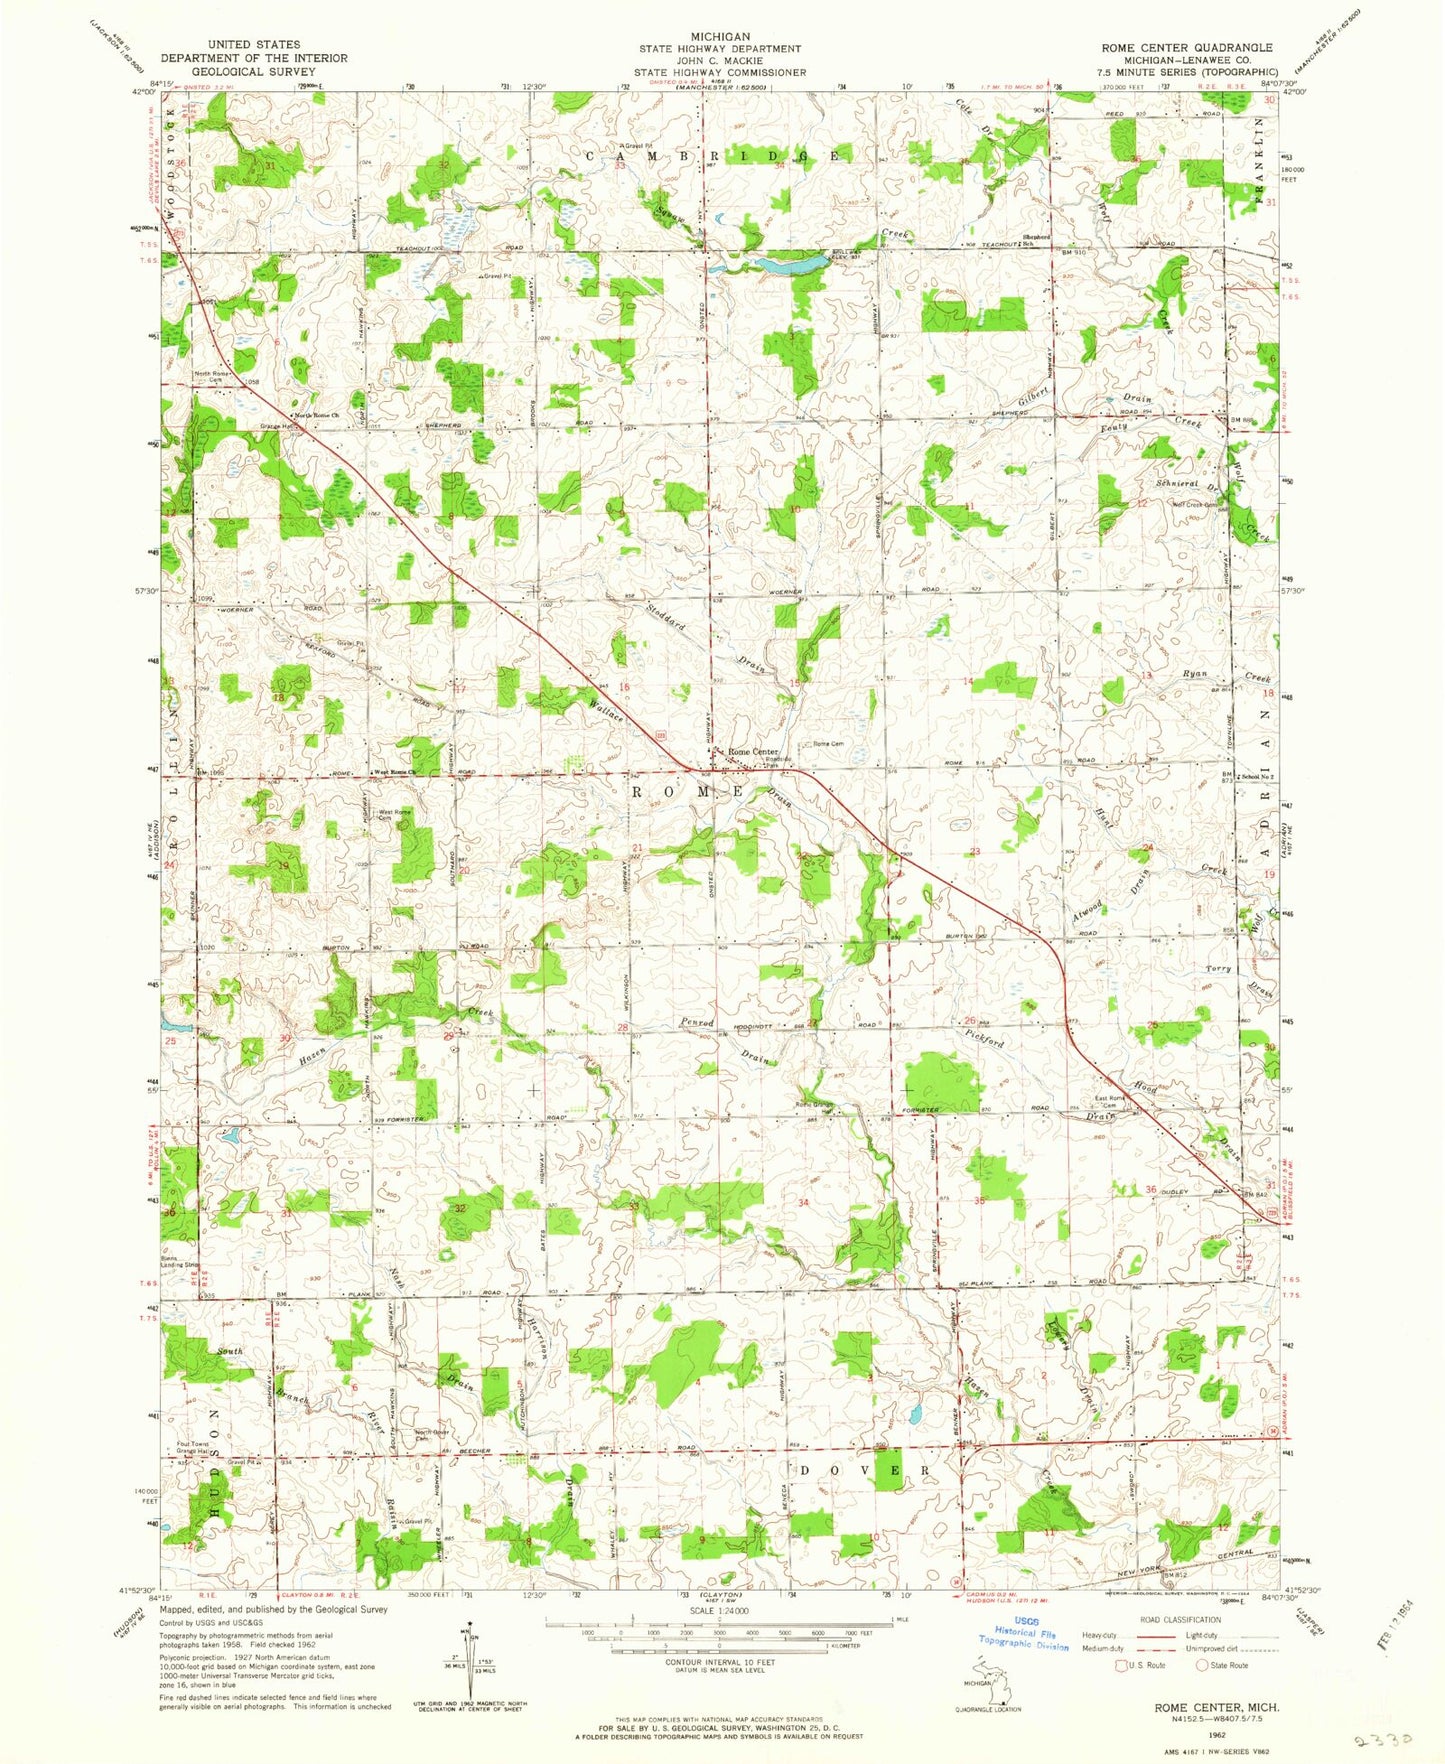 Classic USGS Rome Center Michigan 7.5'x7.5' Topo Map Image